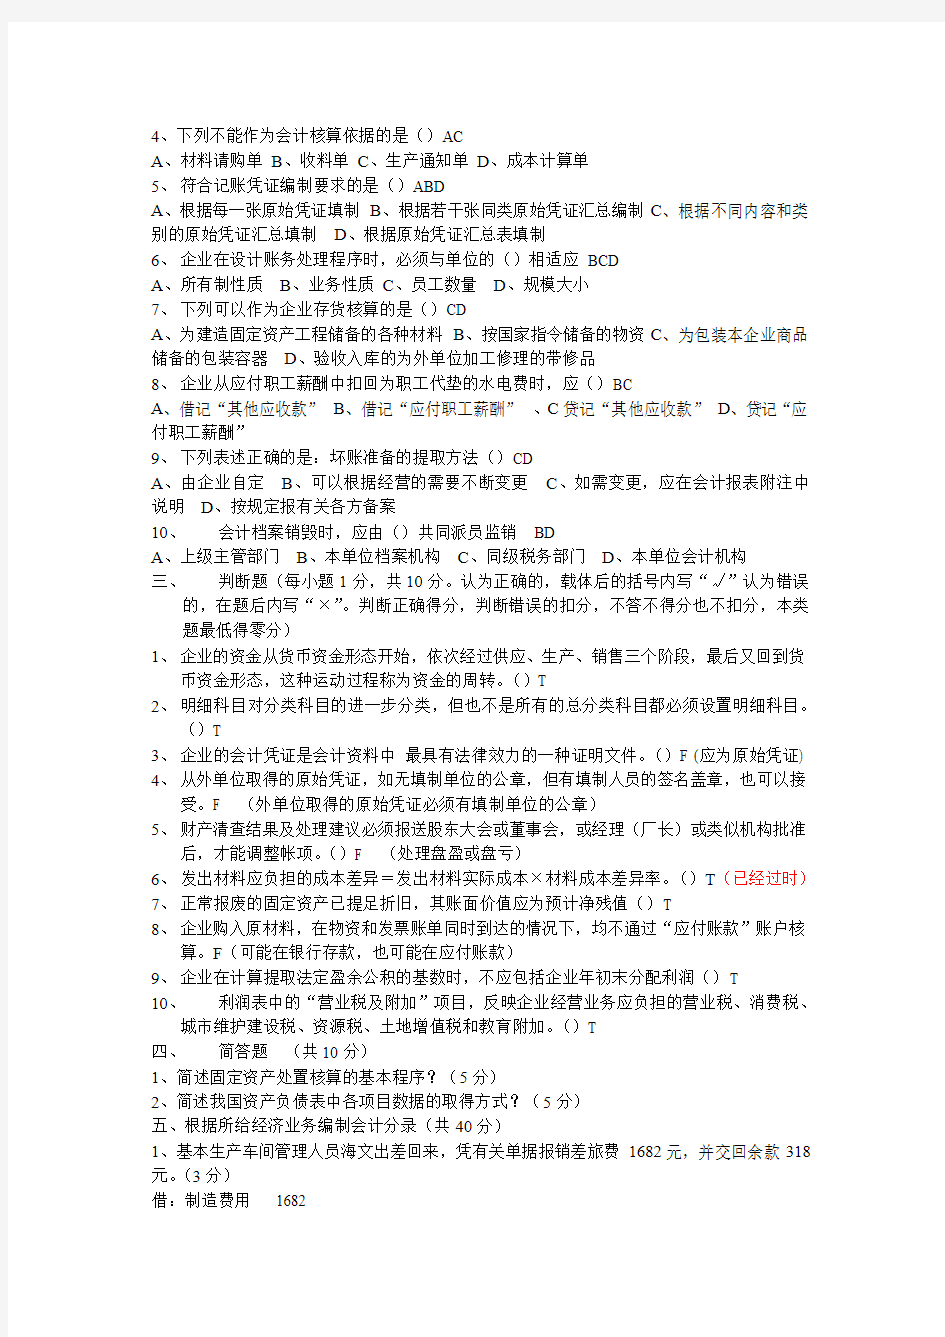 2009年北京市会计从业资格考试《会计基础》试题